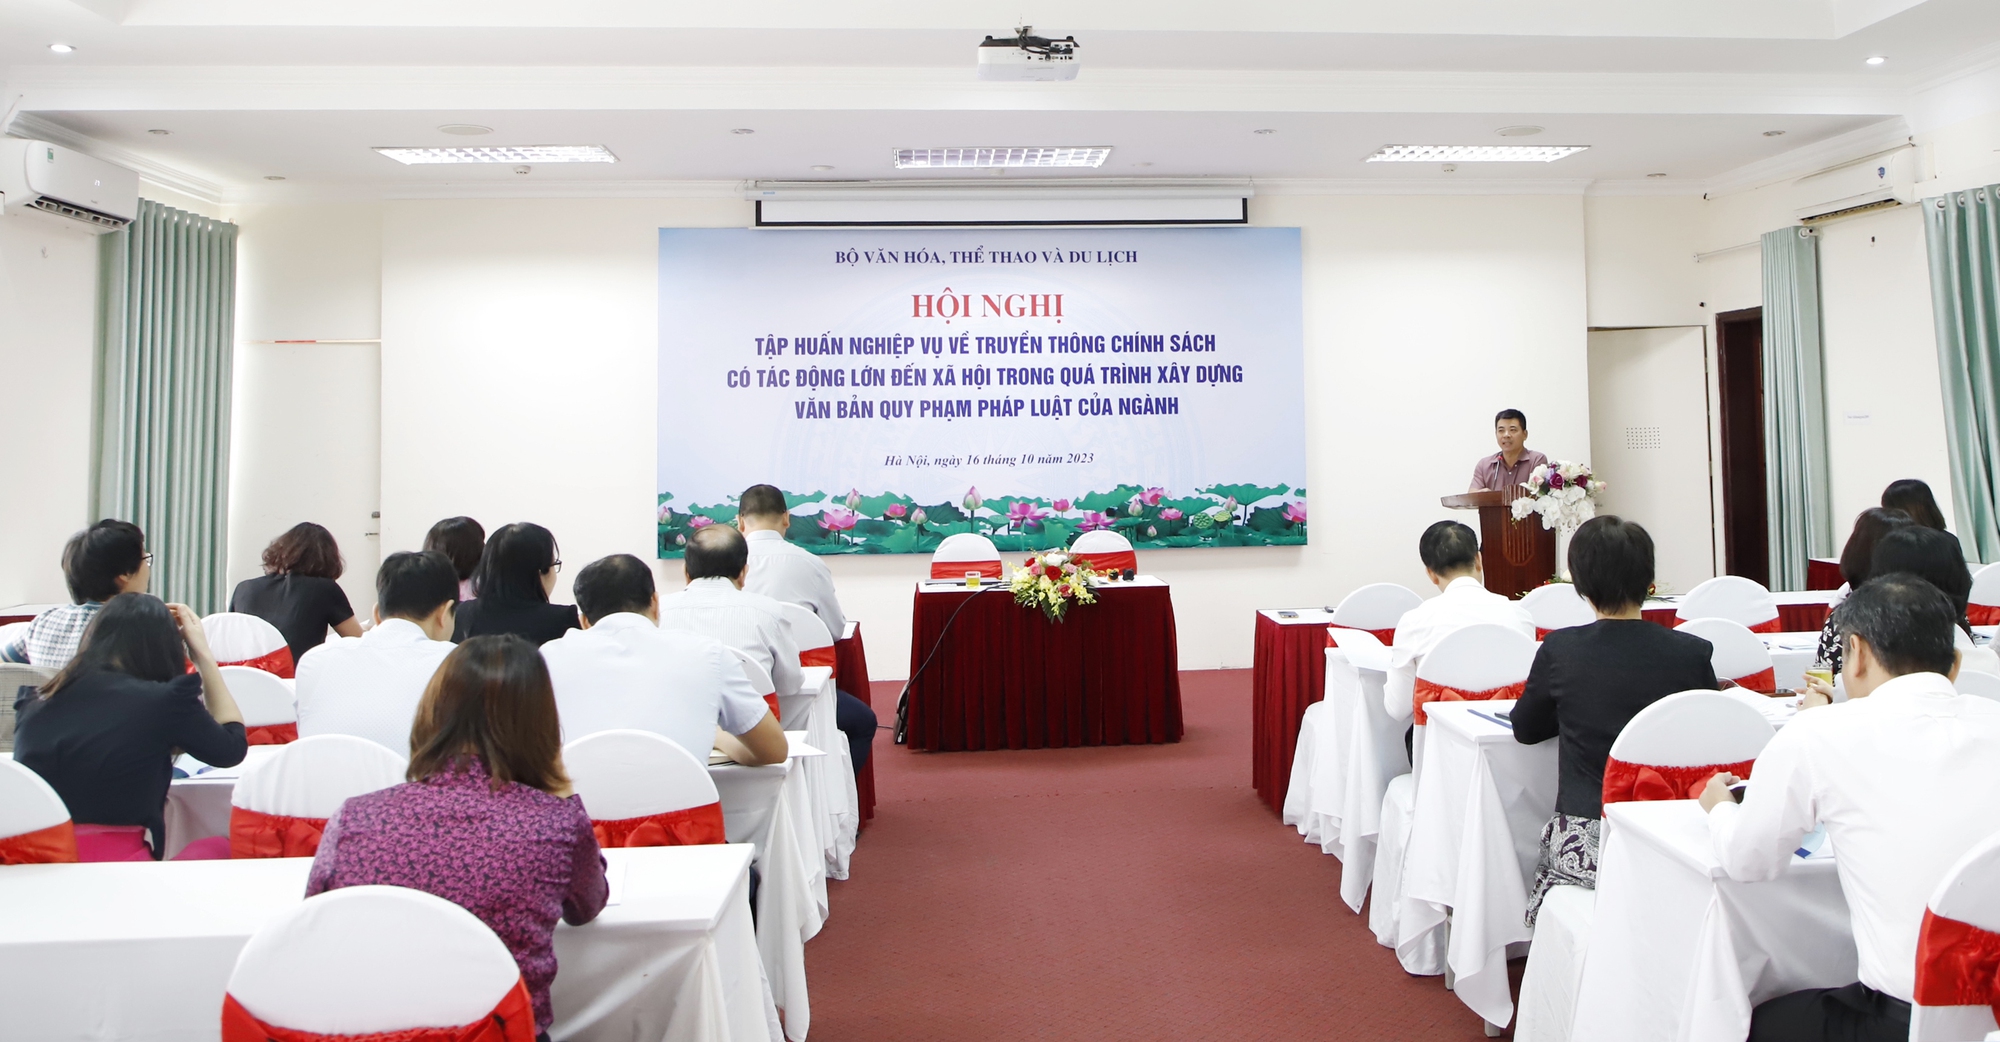 Bộ VHTTDL tổ chức Hội nghị tập huấn nghiệp vụ về truyền thông chính sách  - Ảnh 1.